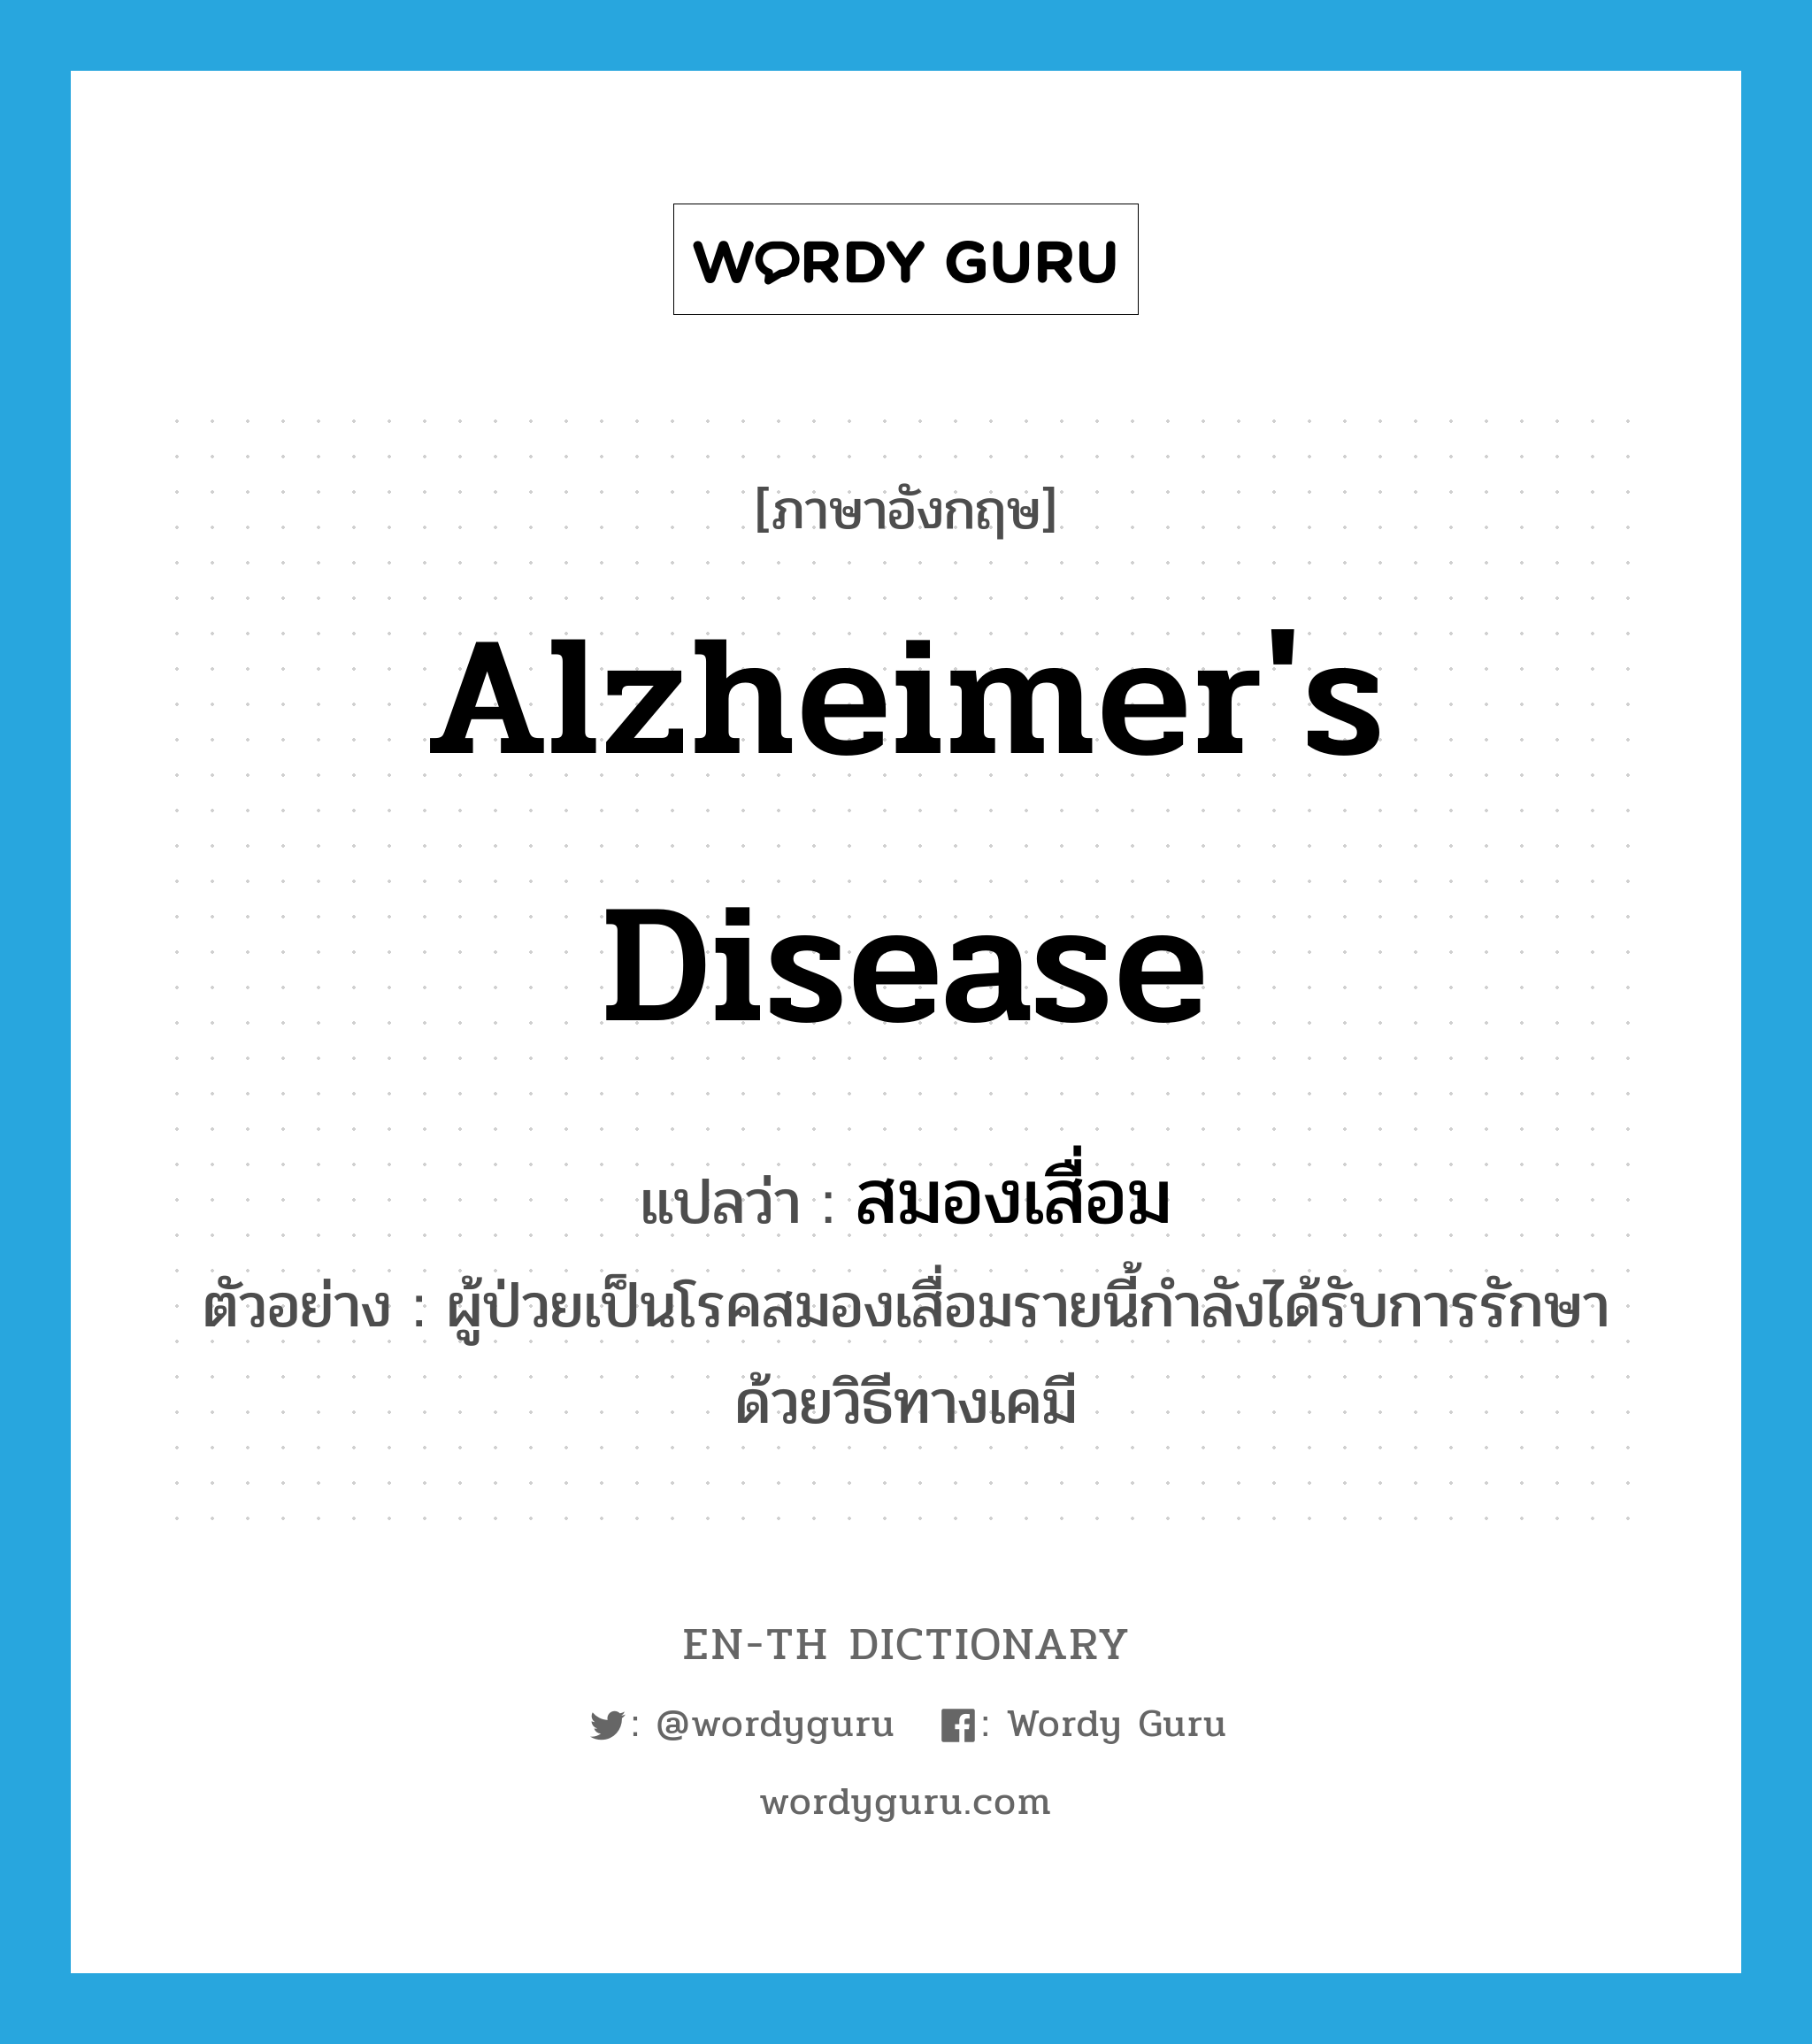 Alzheimer's disease แปลว่า?, คำศัพท์ภาษาอังกฤษ Alzheimer's disease แปลว่า สมองเสื่อม ประเภท N ตัวอย่าง ผู้ป่วยเป็นโรคสมองเสื่อมรายนี้กำลังได้รับการรักษาด้วยวิธีทางเคมี หมวด N